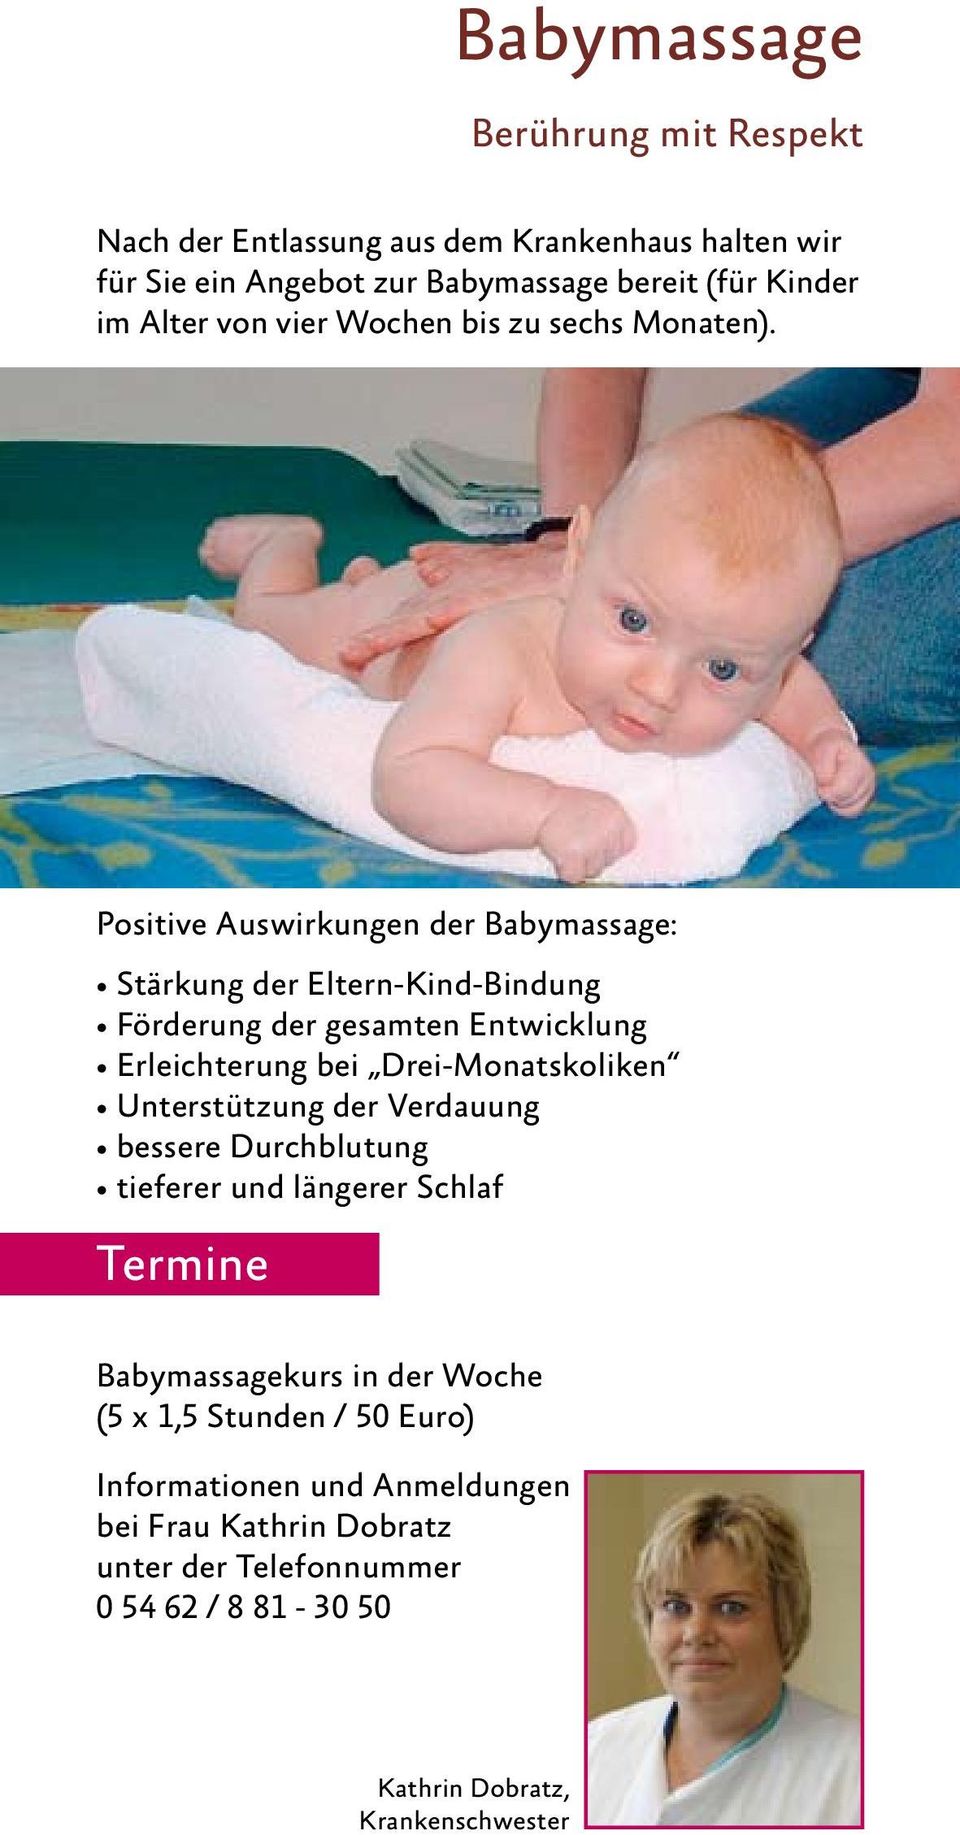 Positive Auswirkungen der Babymassage: Stärkung der Eltern-Kind-Bindung Förderung der gesamten Entwicklung Erleichterung bei Drei-Monatskoliken